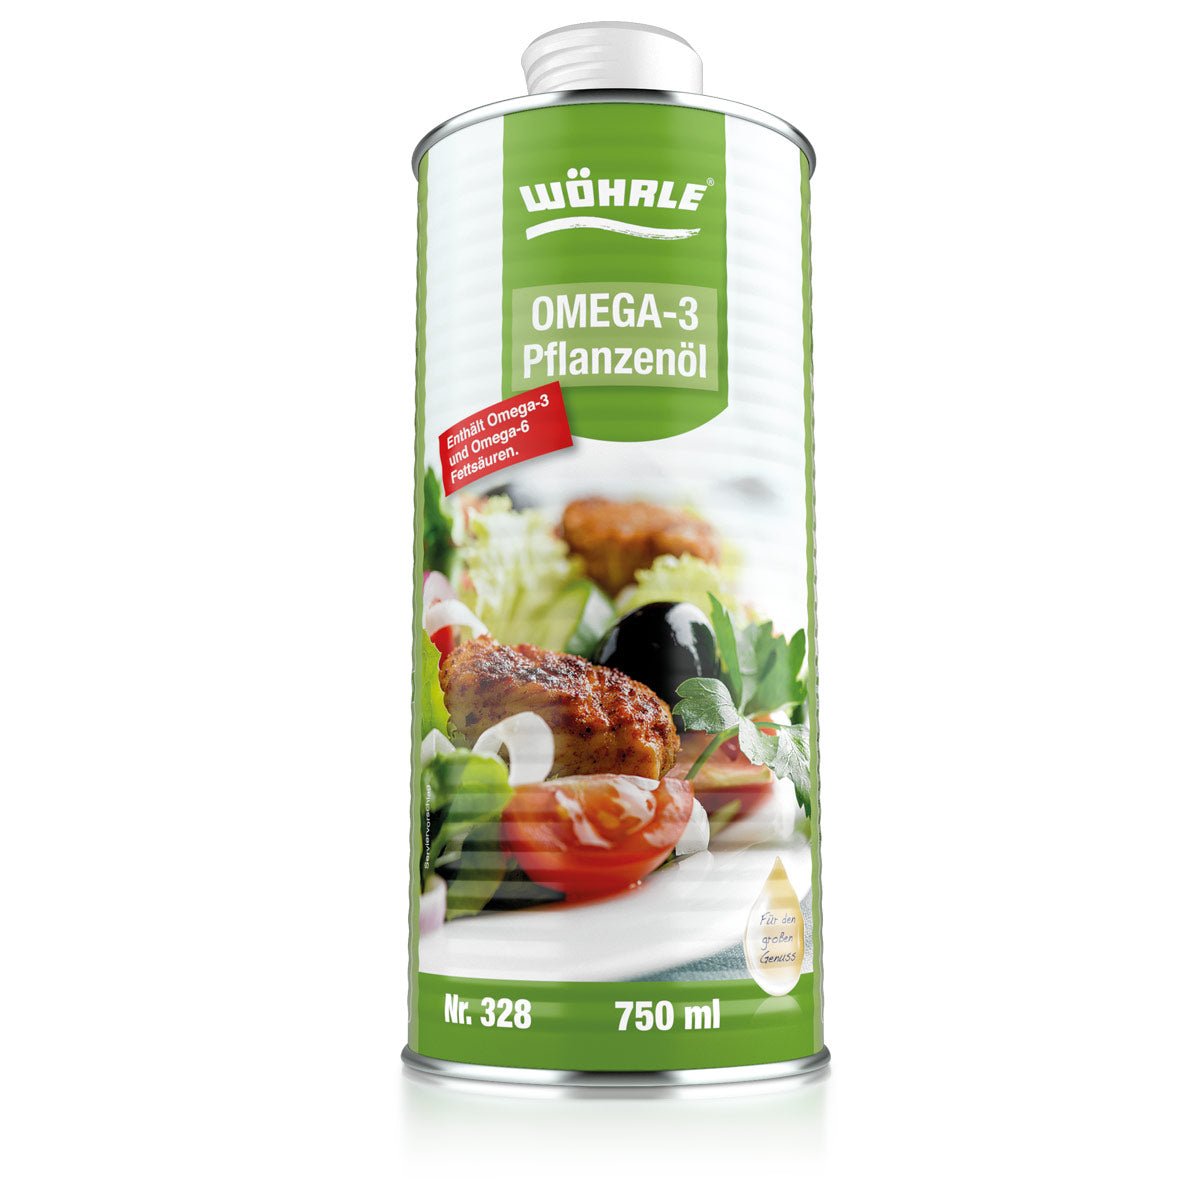 Omega-3 Pflanzenöl - Wöhrle - S' Beschde für dahoim!